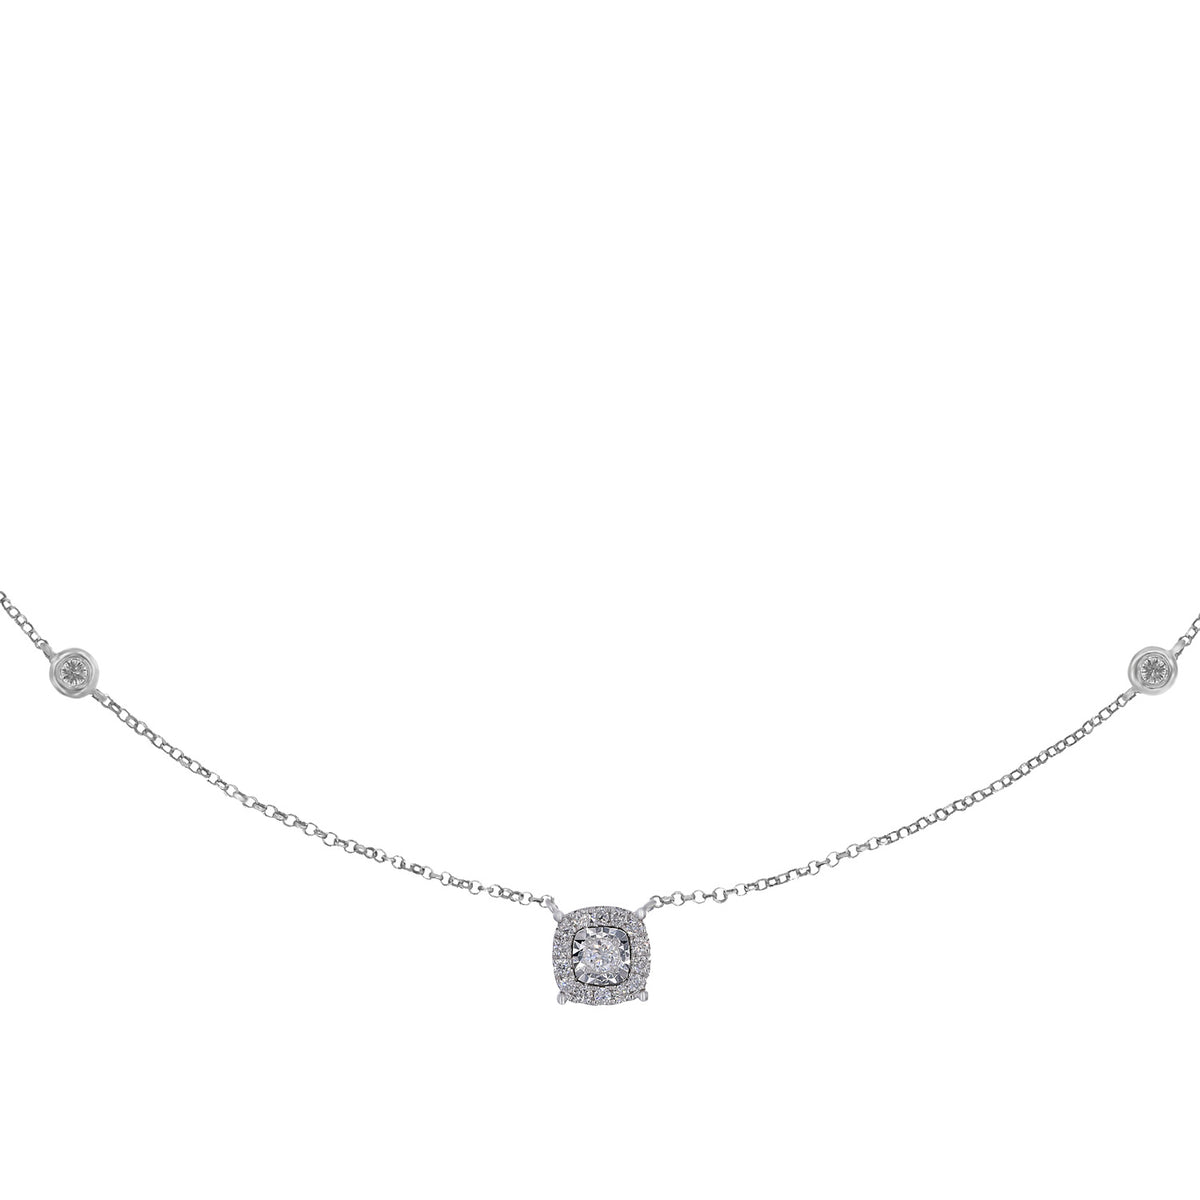 Diamond Necklace. Square diamond necklace